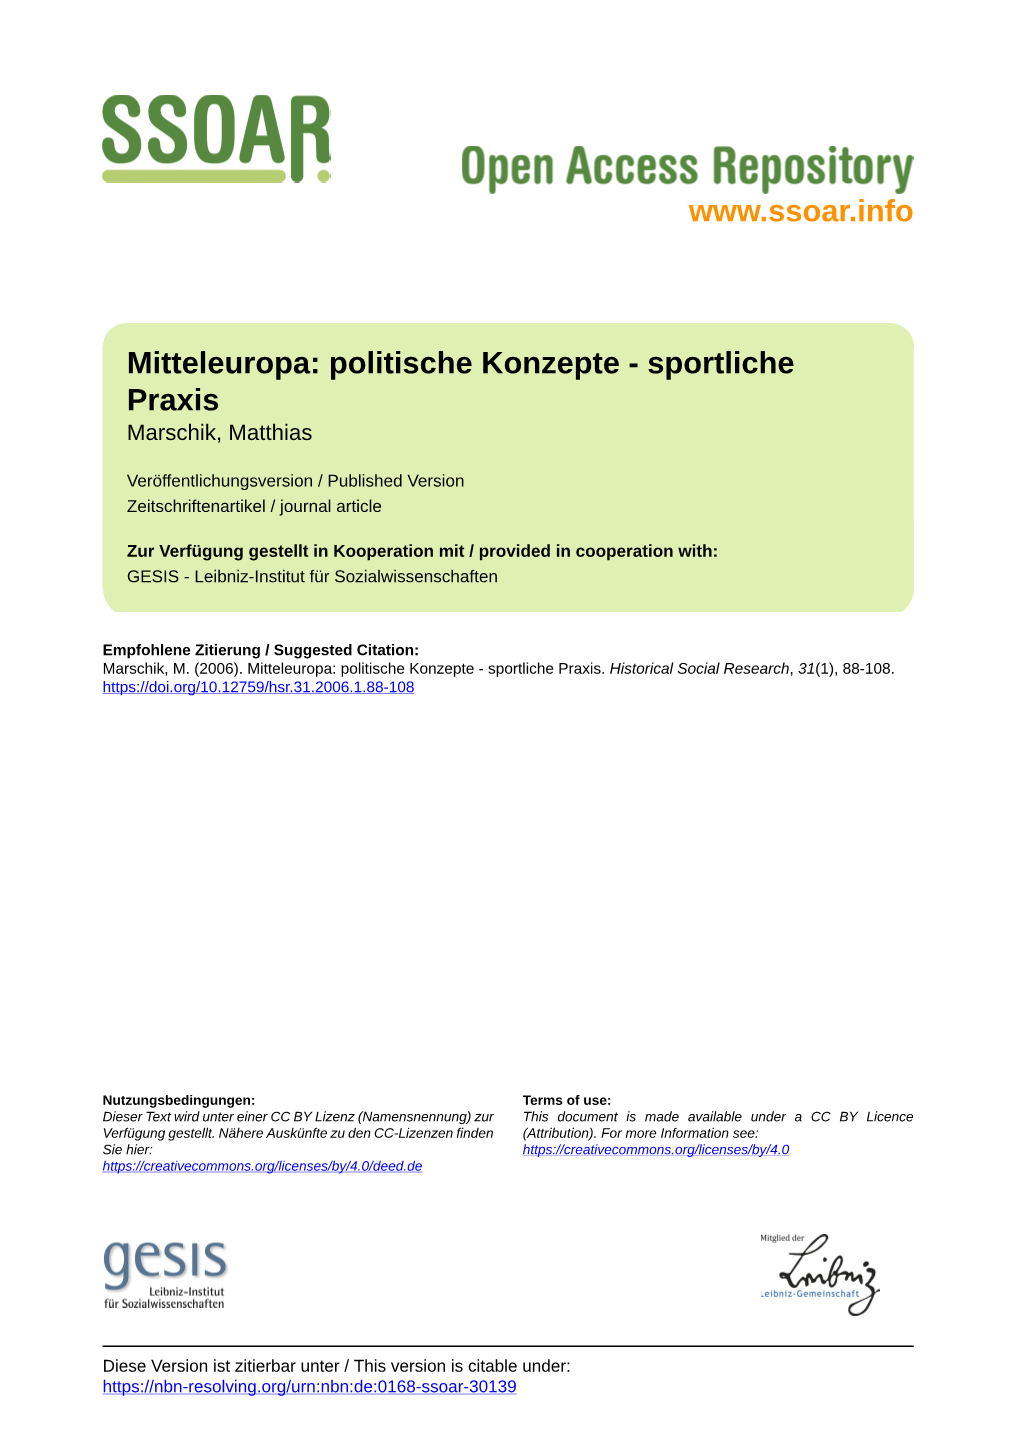 Mitteleuropa: Politische Konzepte-Sportliche Praxis